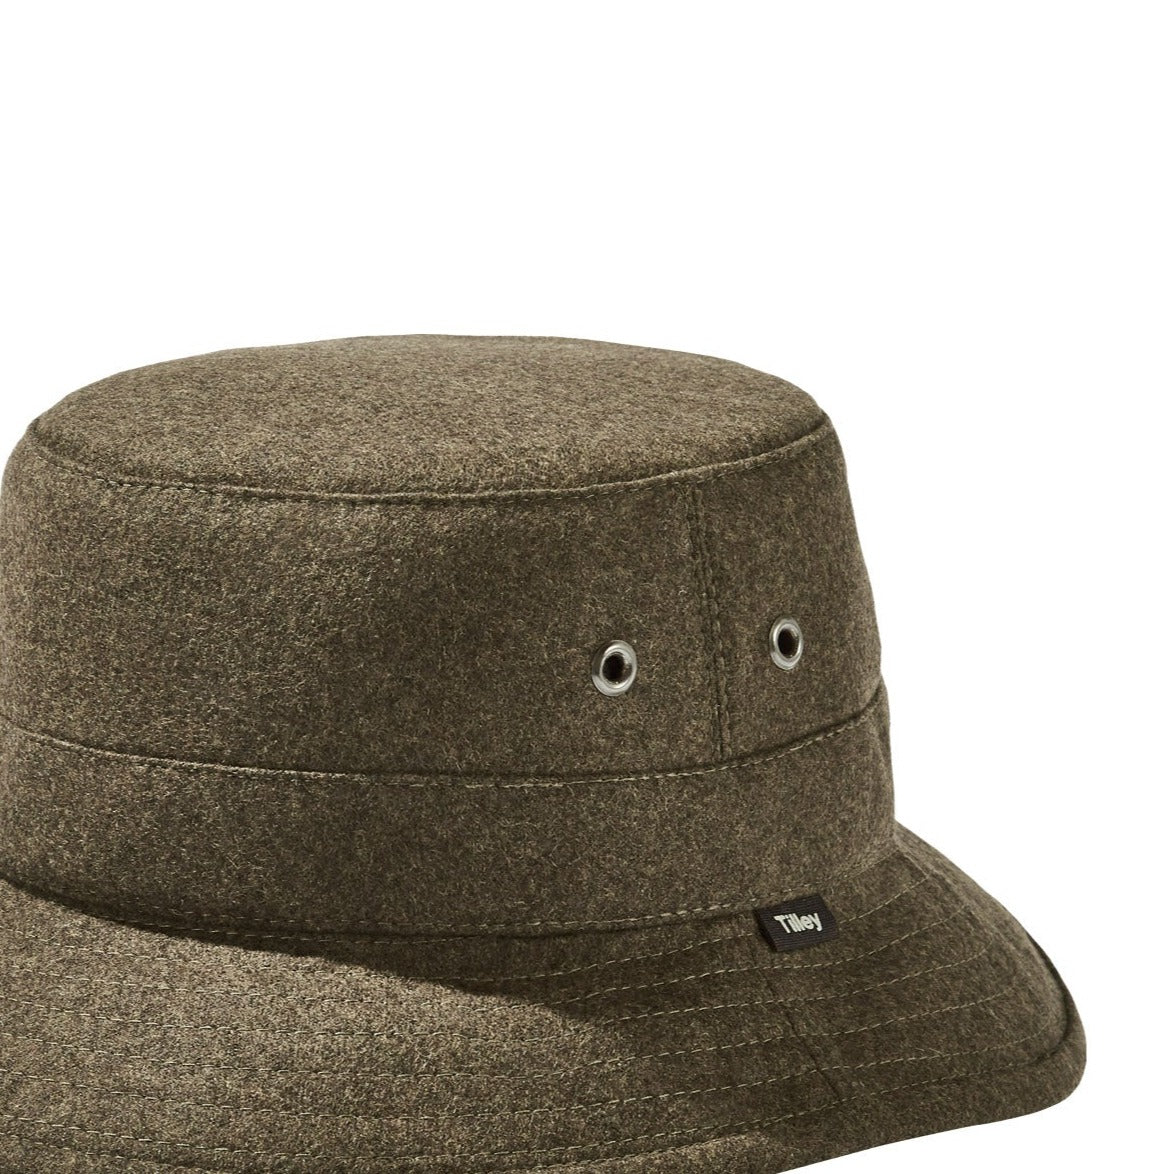 Tilley-Warmth-Hat